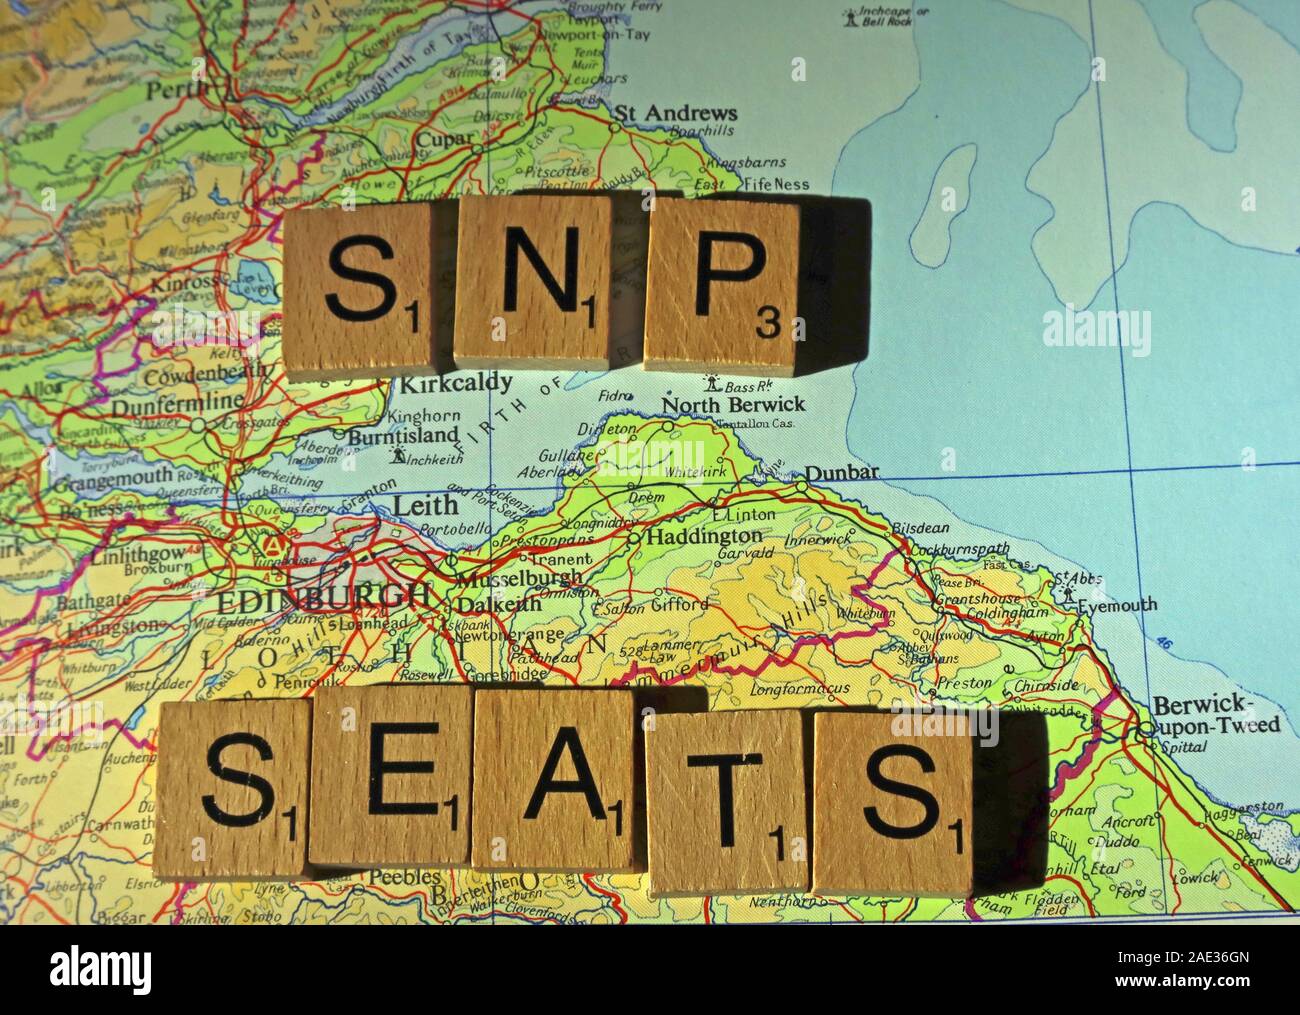 SNP sedi scritto in lettere di Scrabble su di una mappa del Regno Unito - Elezioni generali, alle elezioni politiche di partito leader,,parti,rivendicazioni,dubbi Foto Stock